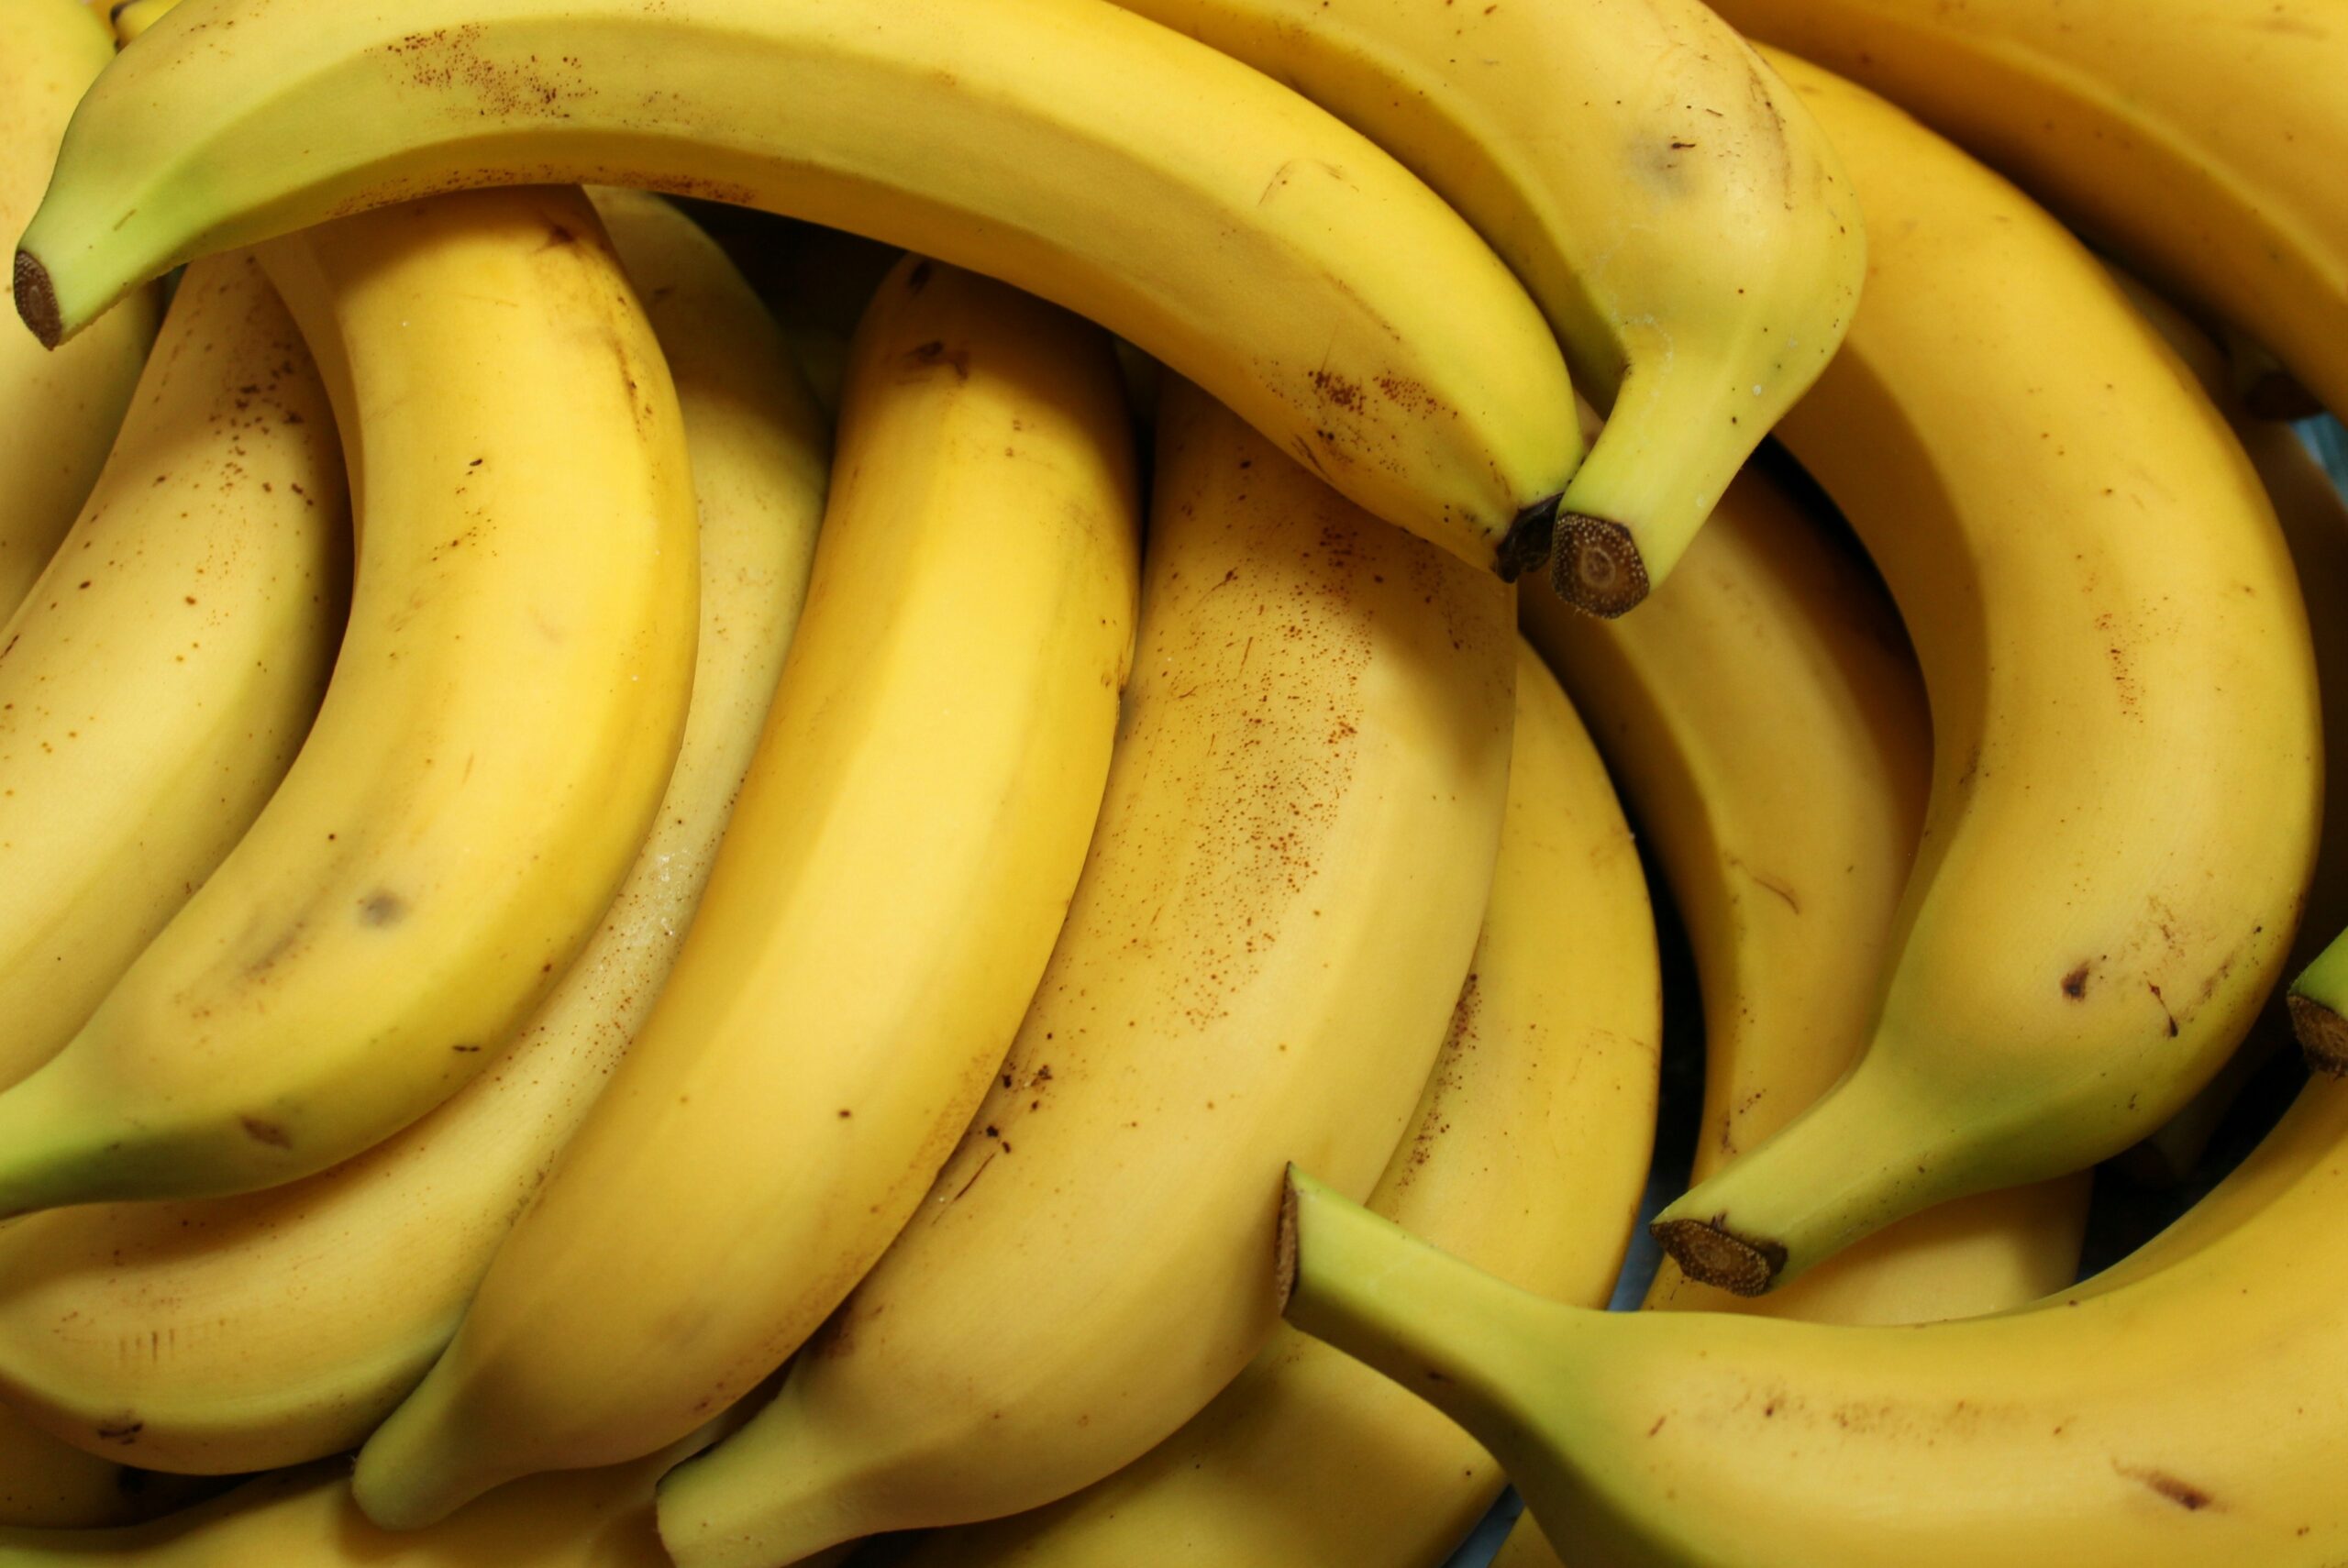 Como conservar banana madura: aprenda esses truques infalíveis e evite que ela estrague